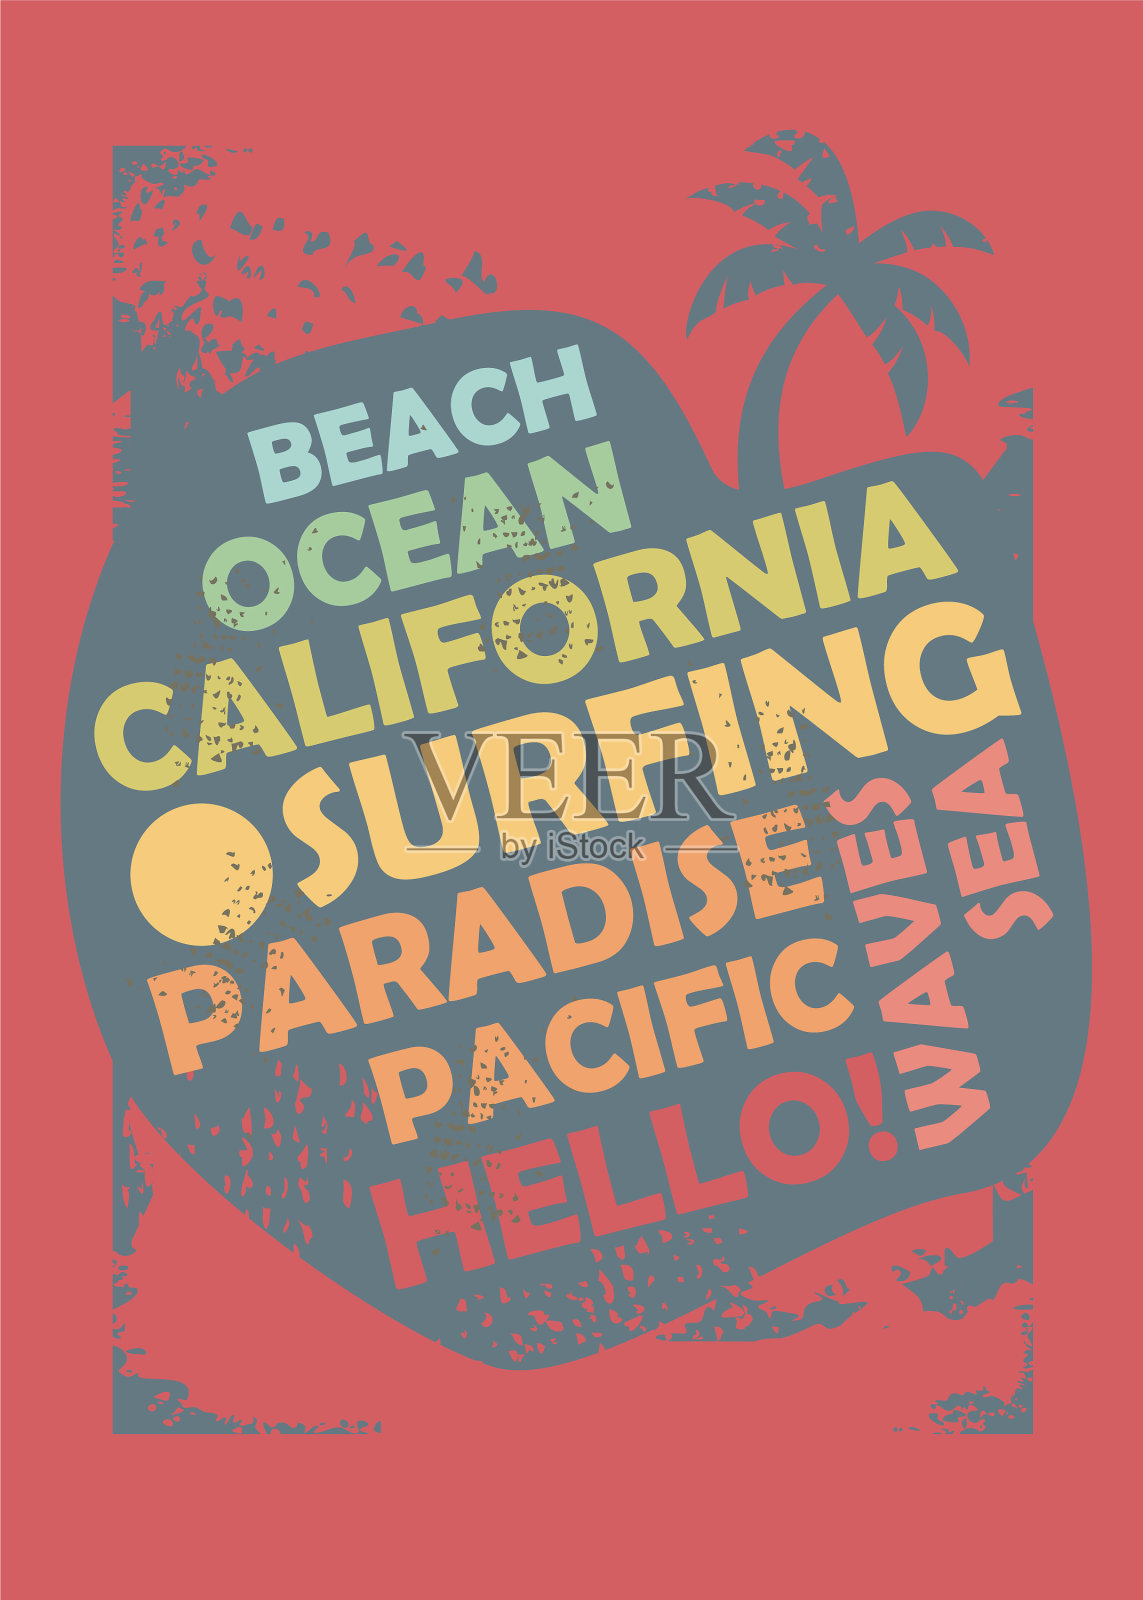 加州冲浪t恤设计布局设计模板素材